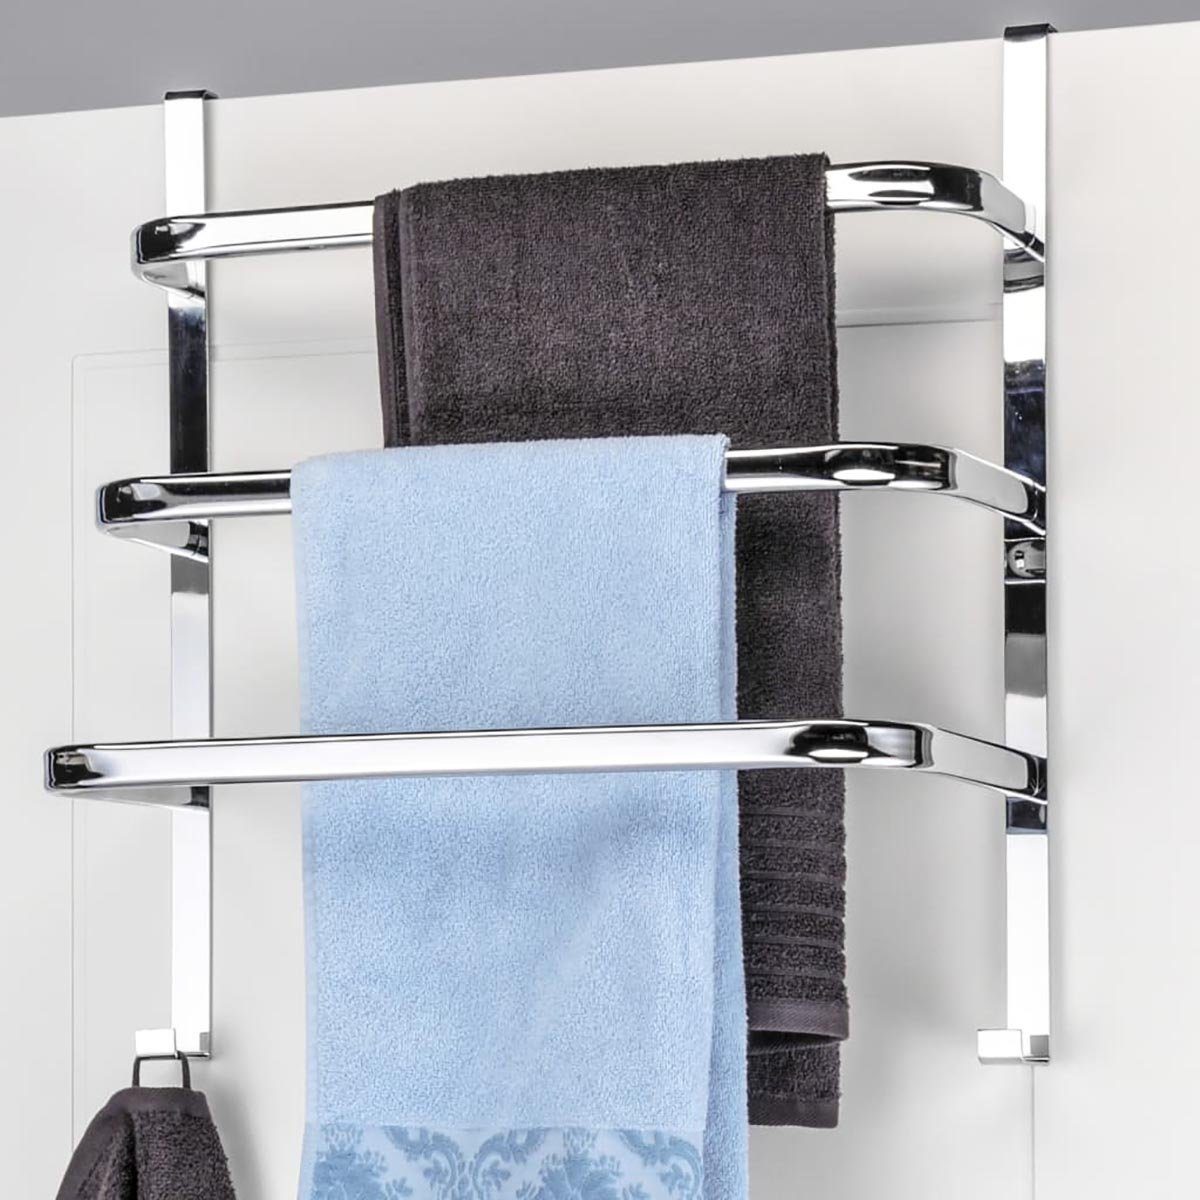 Wohnmöbel, Vorhangschiene Türen für Handtuchhalter Badezimmer sauber halten DOTMALL